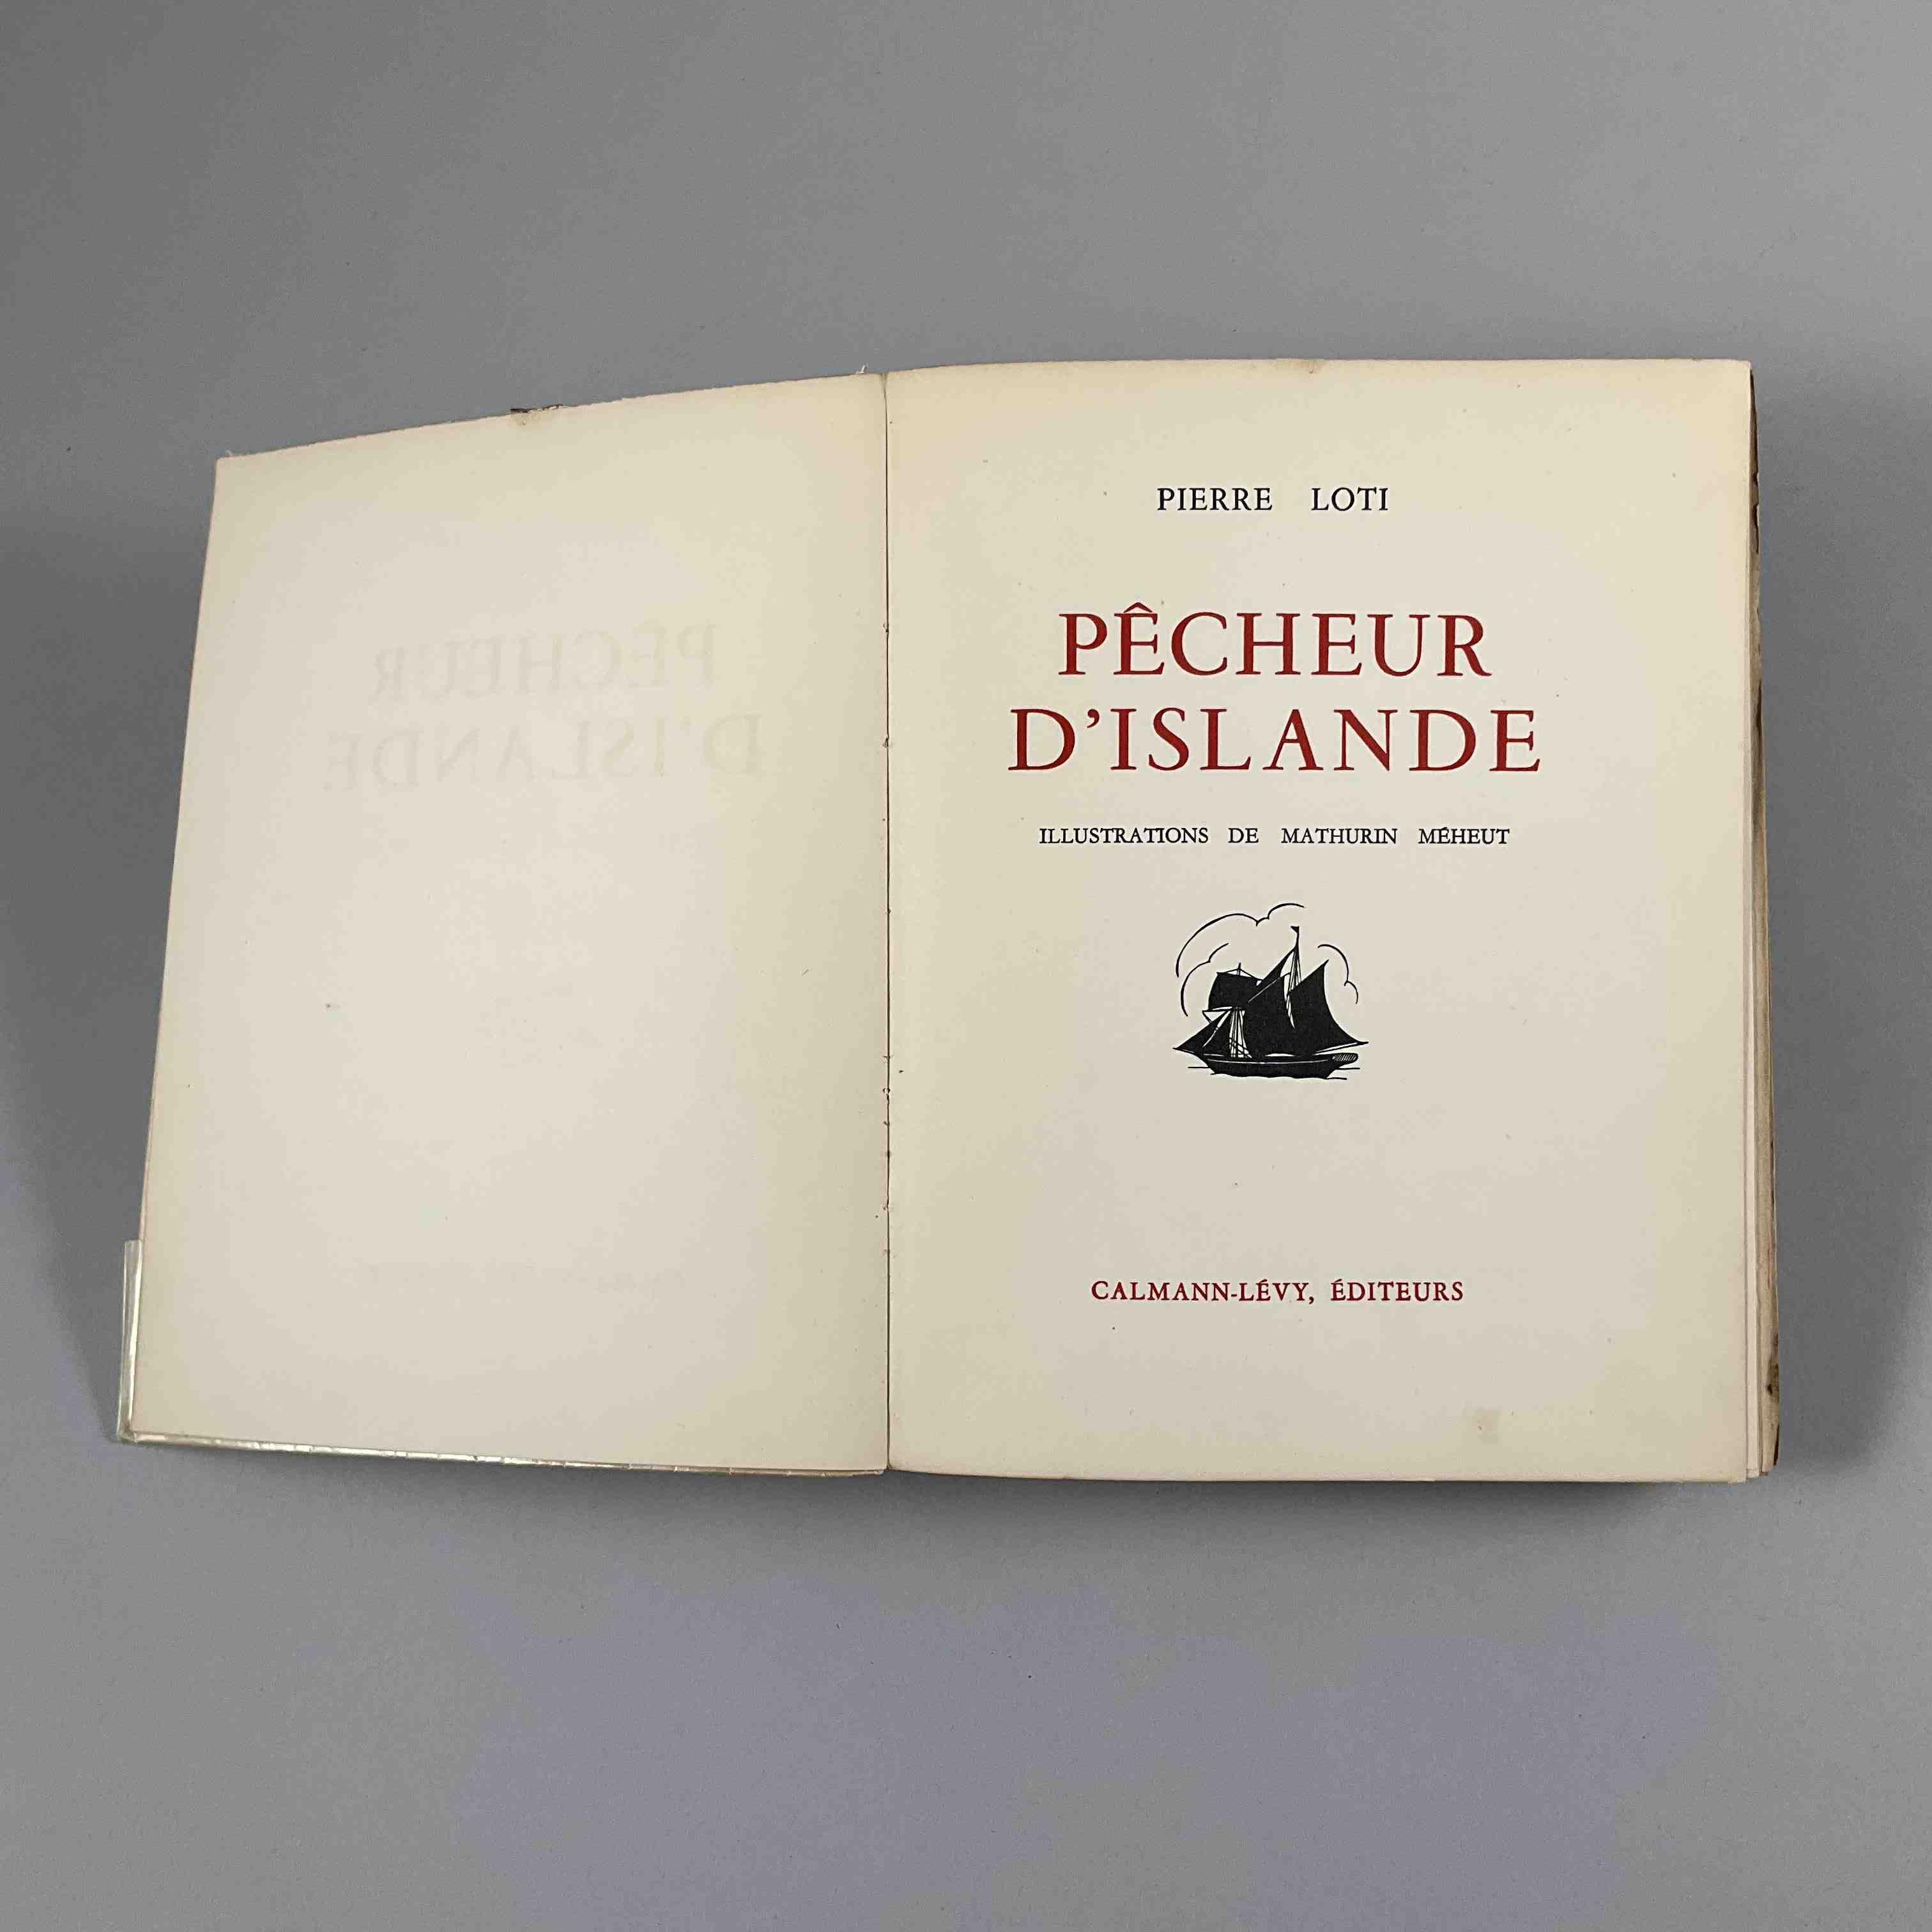 Pierre Loti, Pêcheur d'Islande.
Paris, Calmann-Lévy, 1936. 
Illustrations de Mathurin Méheut,...